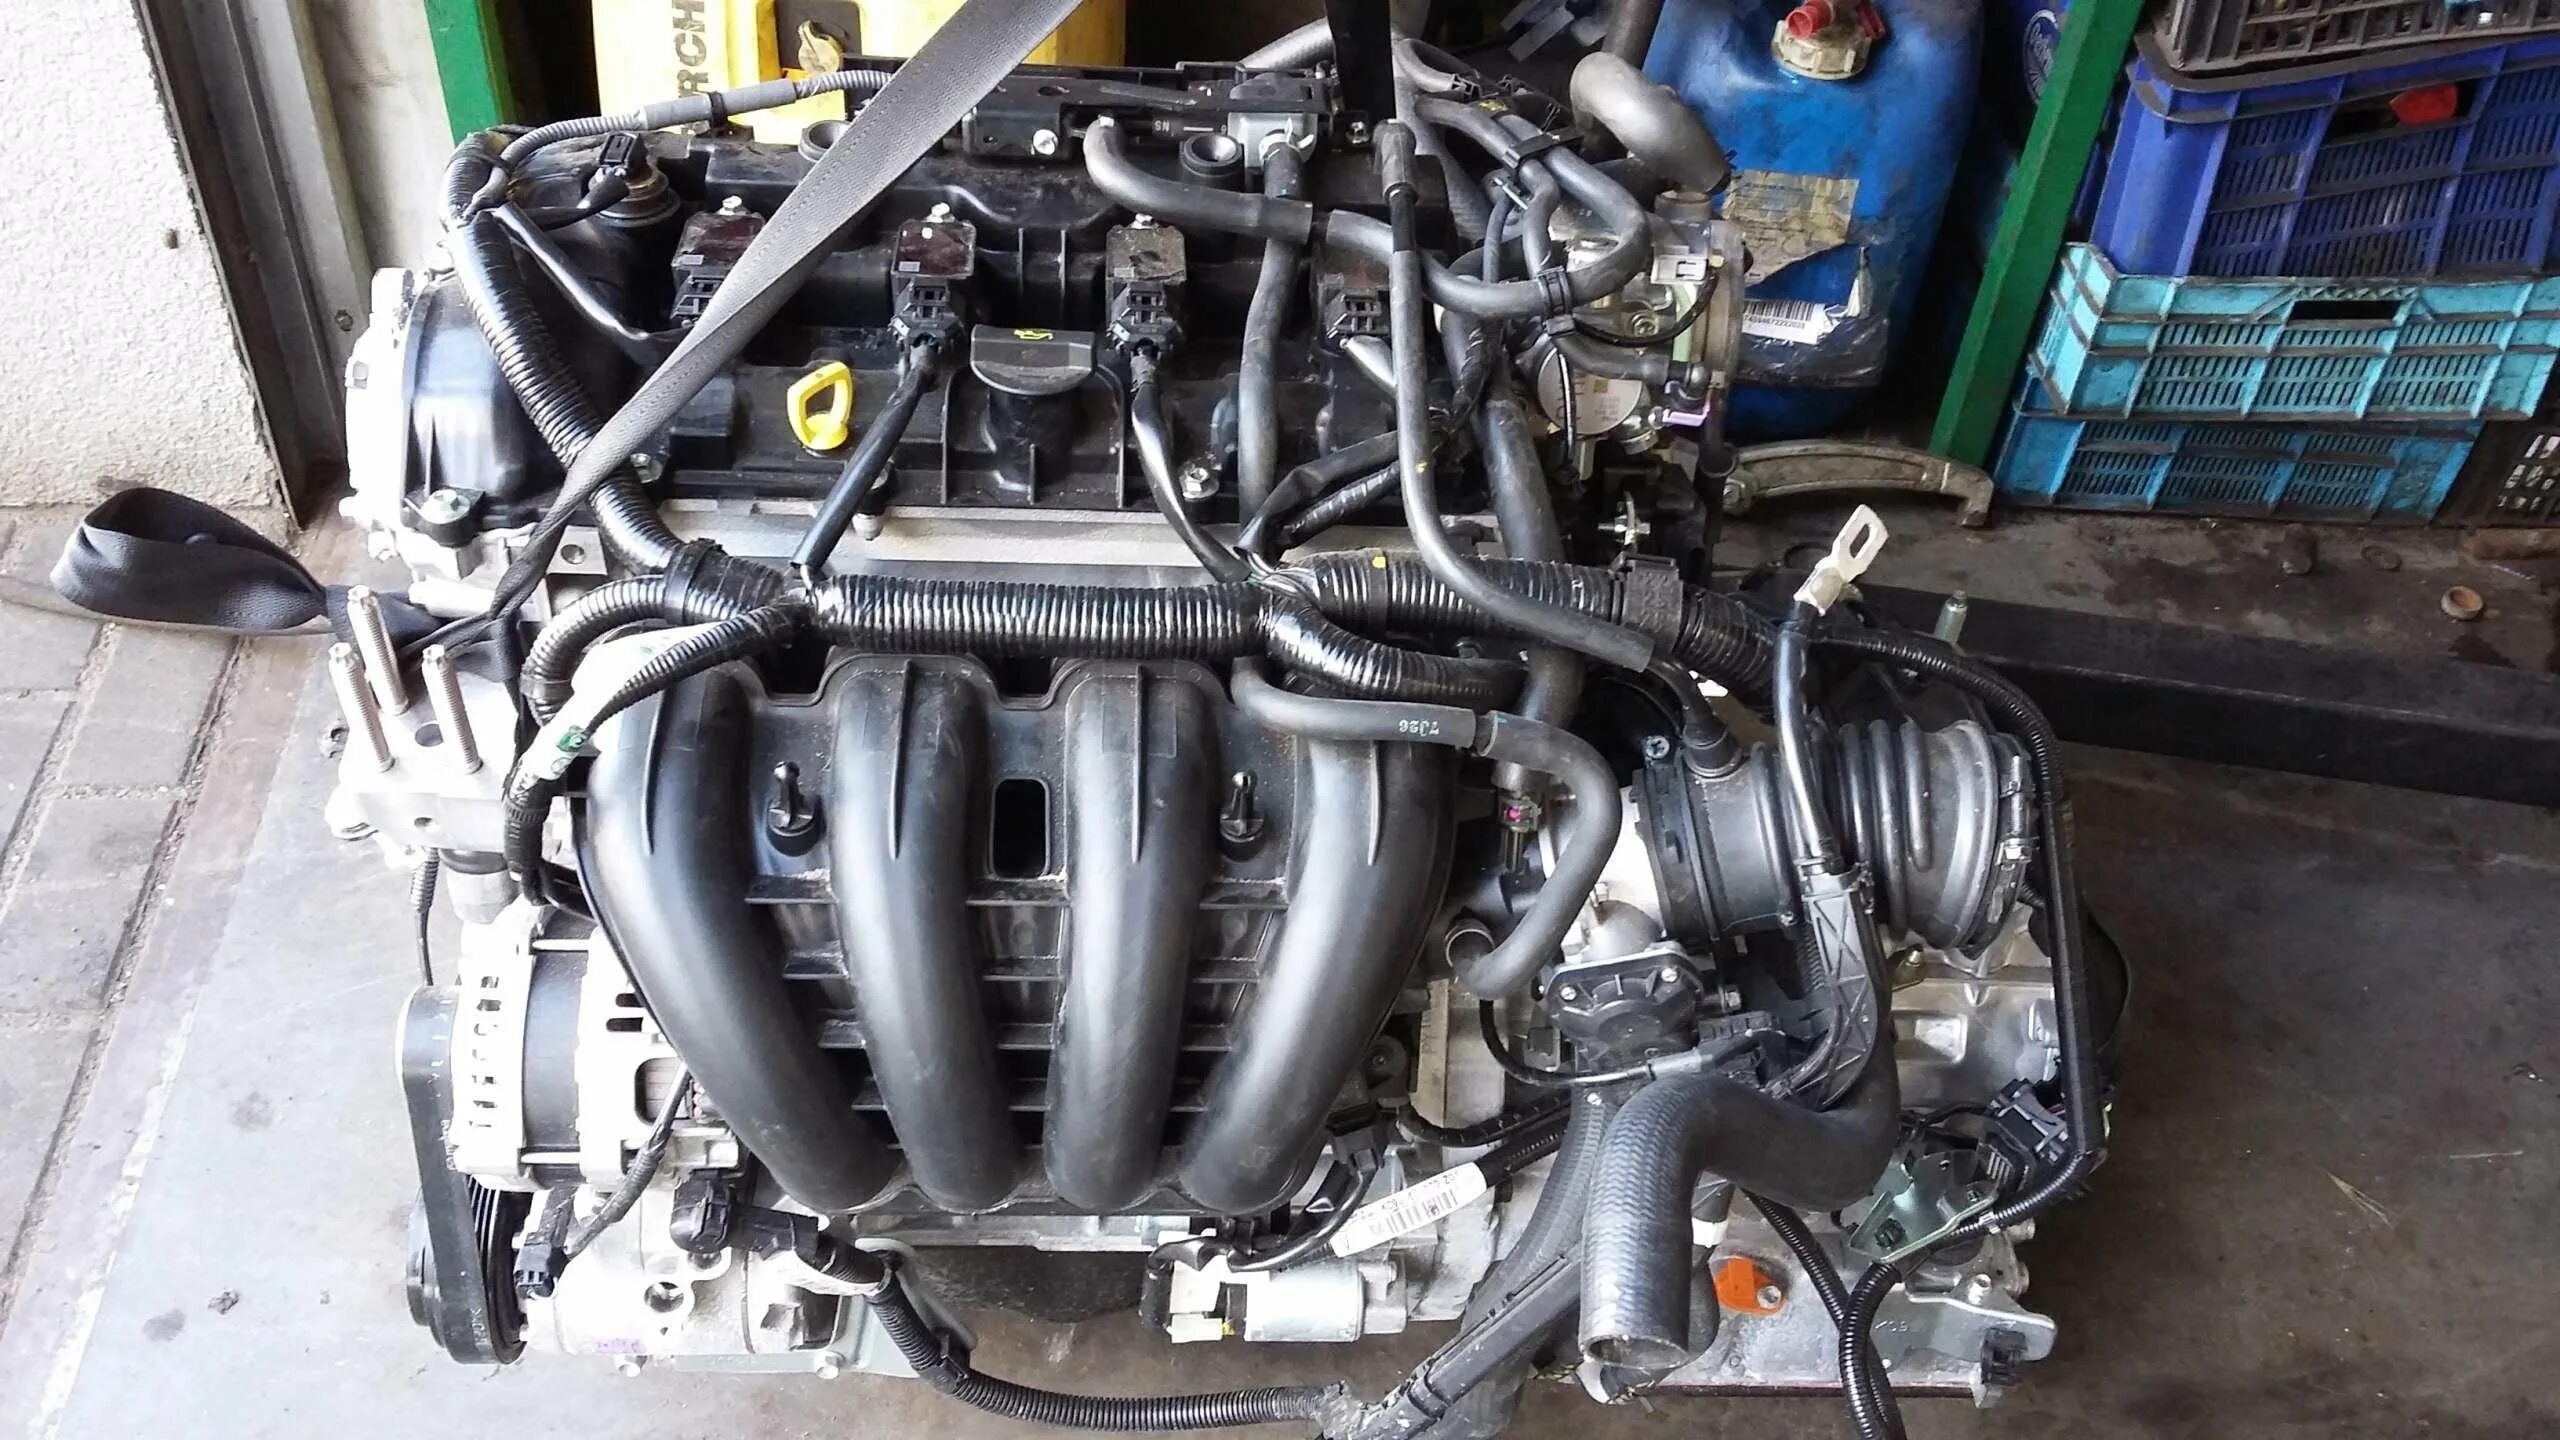 Двигатель мазда сх5 2.0. Мотор Мазда сх5 2.5. Mazda CX-5 двигатель 2.0. Двигатель Мазда СХ 5. Двигатель Мазда cx5 2.5.